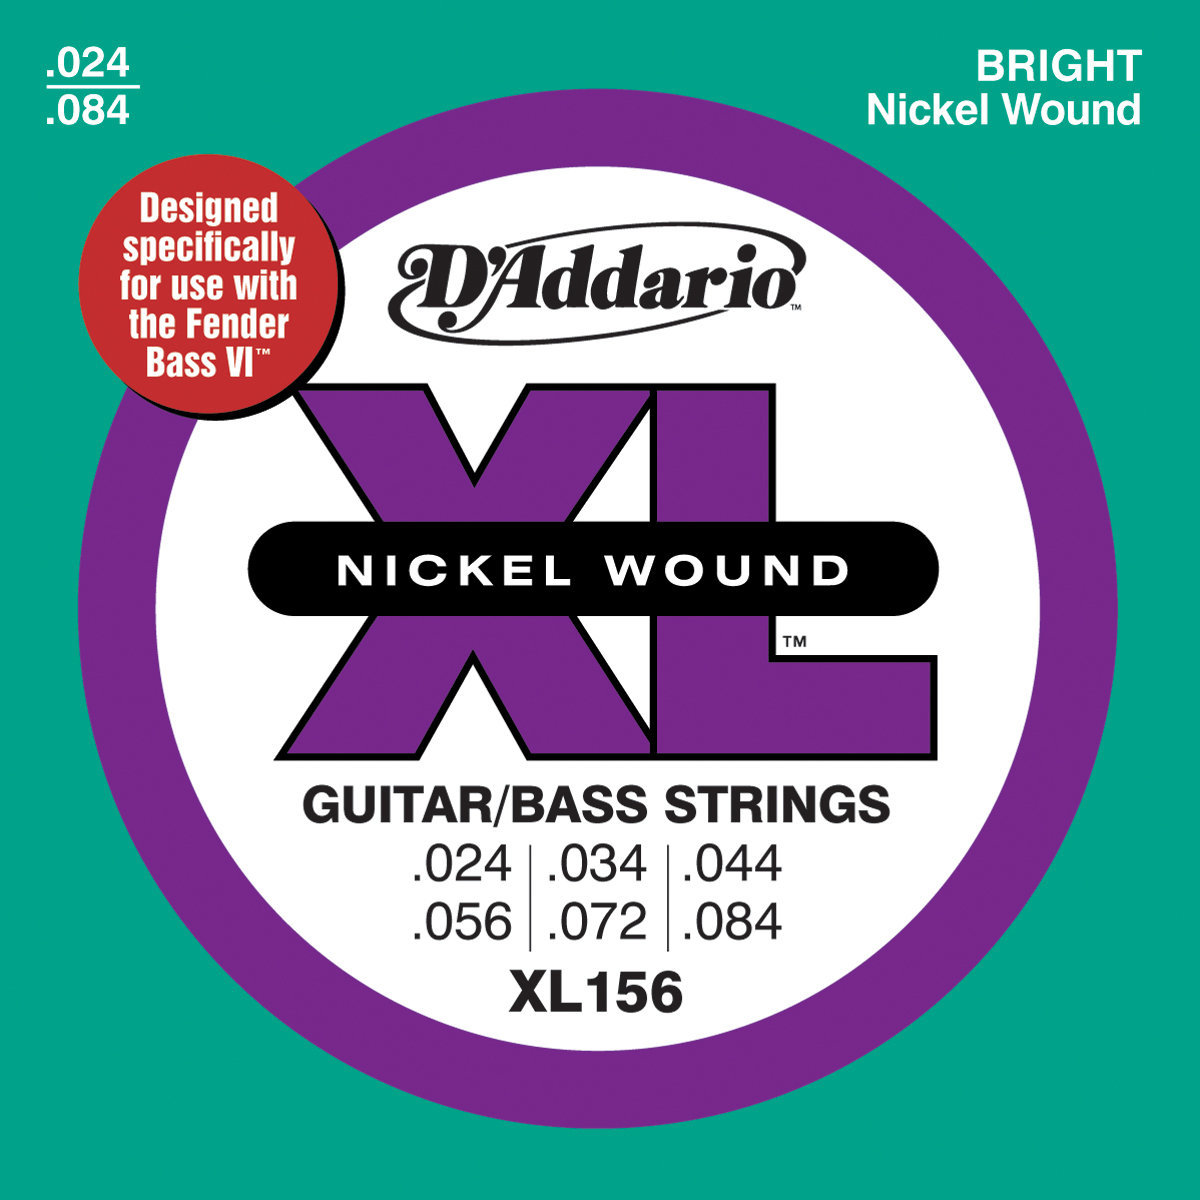 Corde Basso 6 Corde D'Addario XL156 Nickel Wound Fender Bass VI 24-84